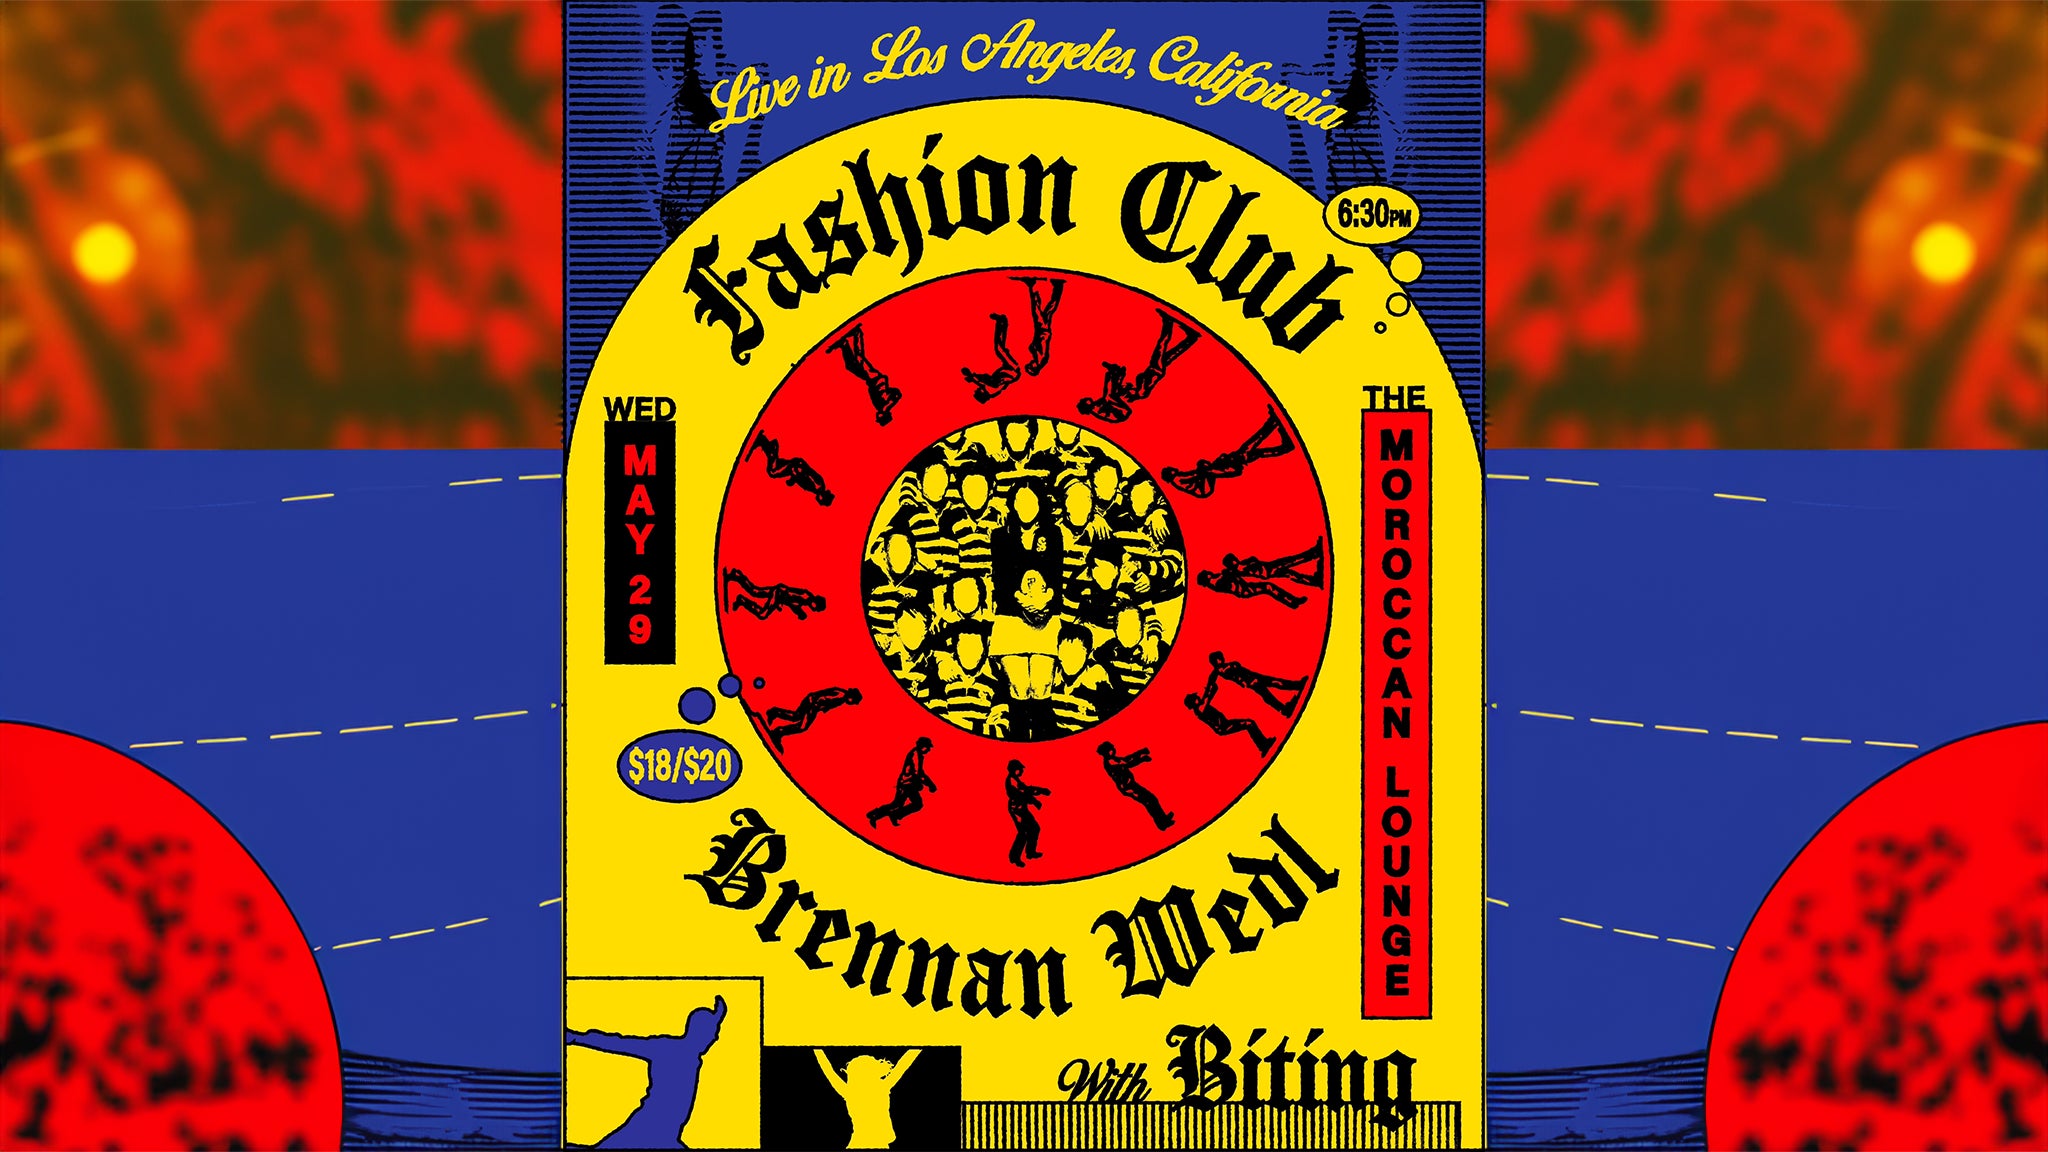 Fashion Club / Brennan Wedl w/ Biting